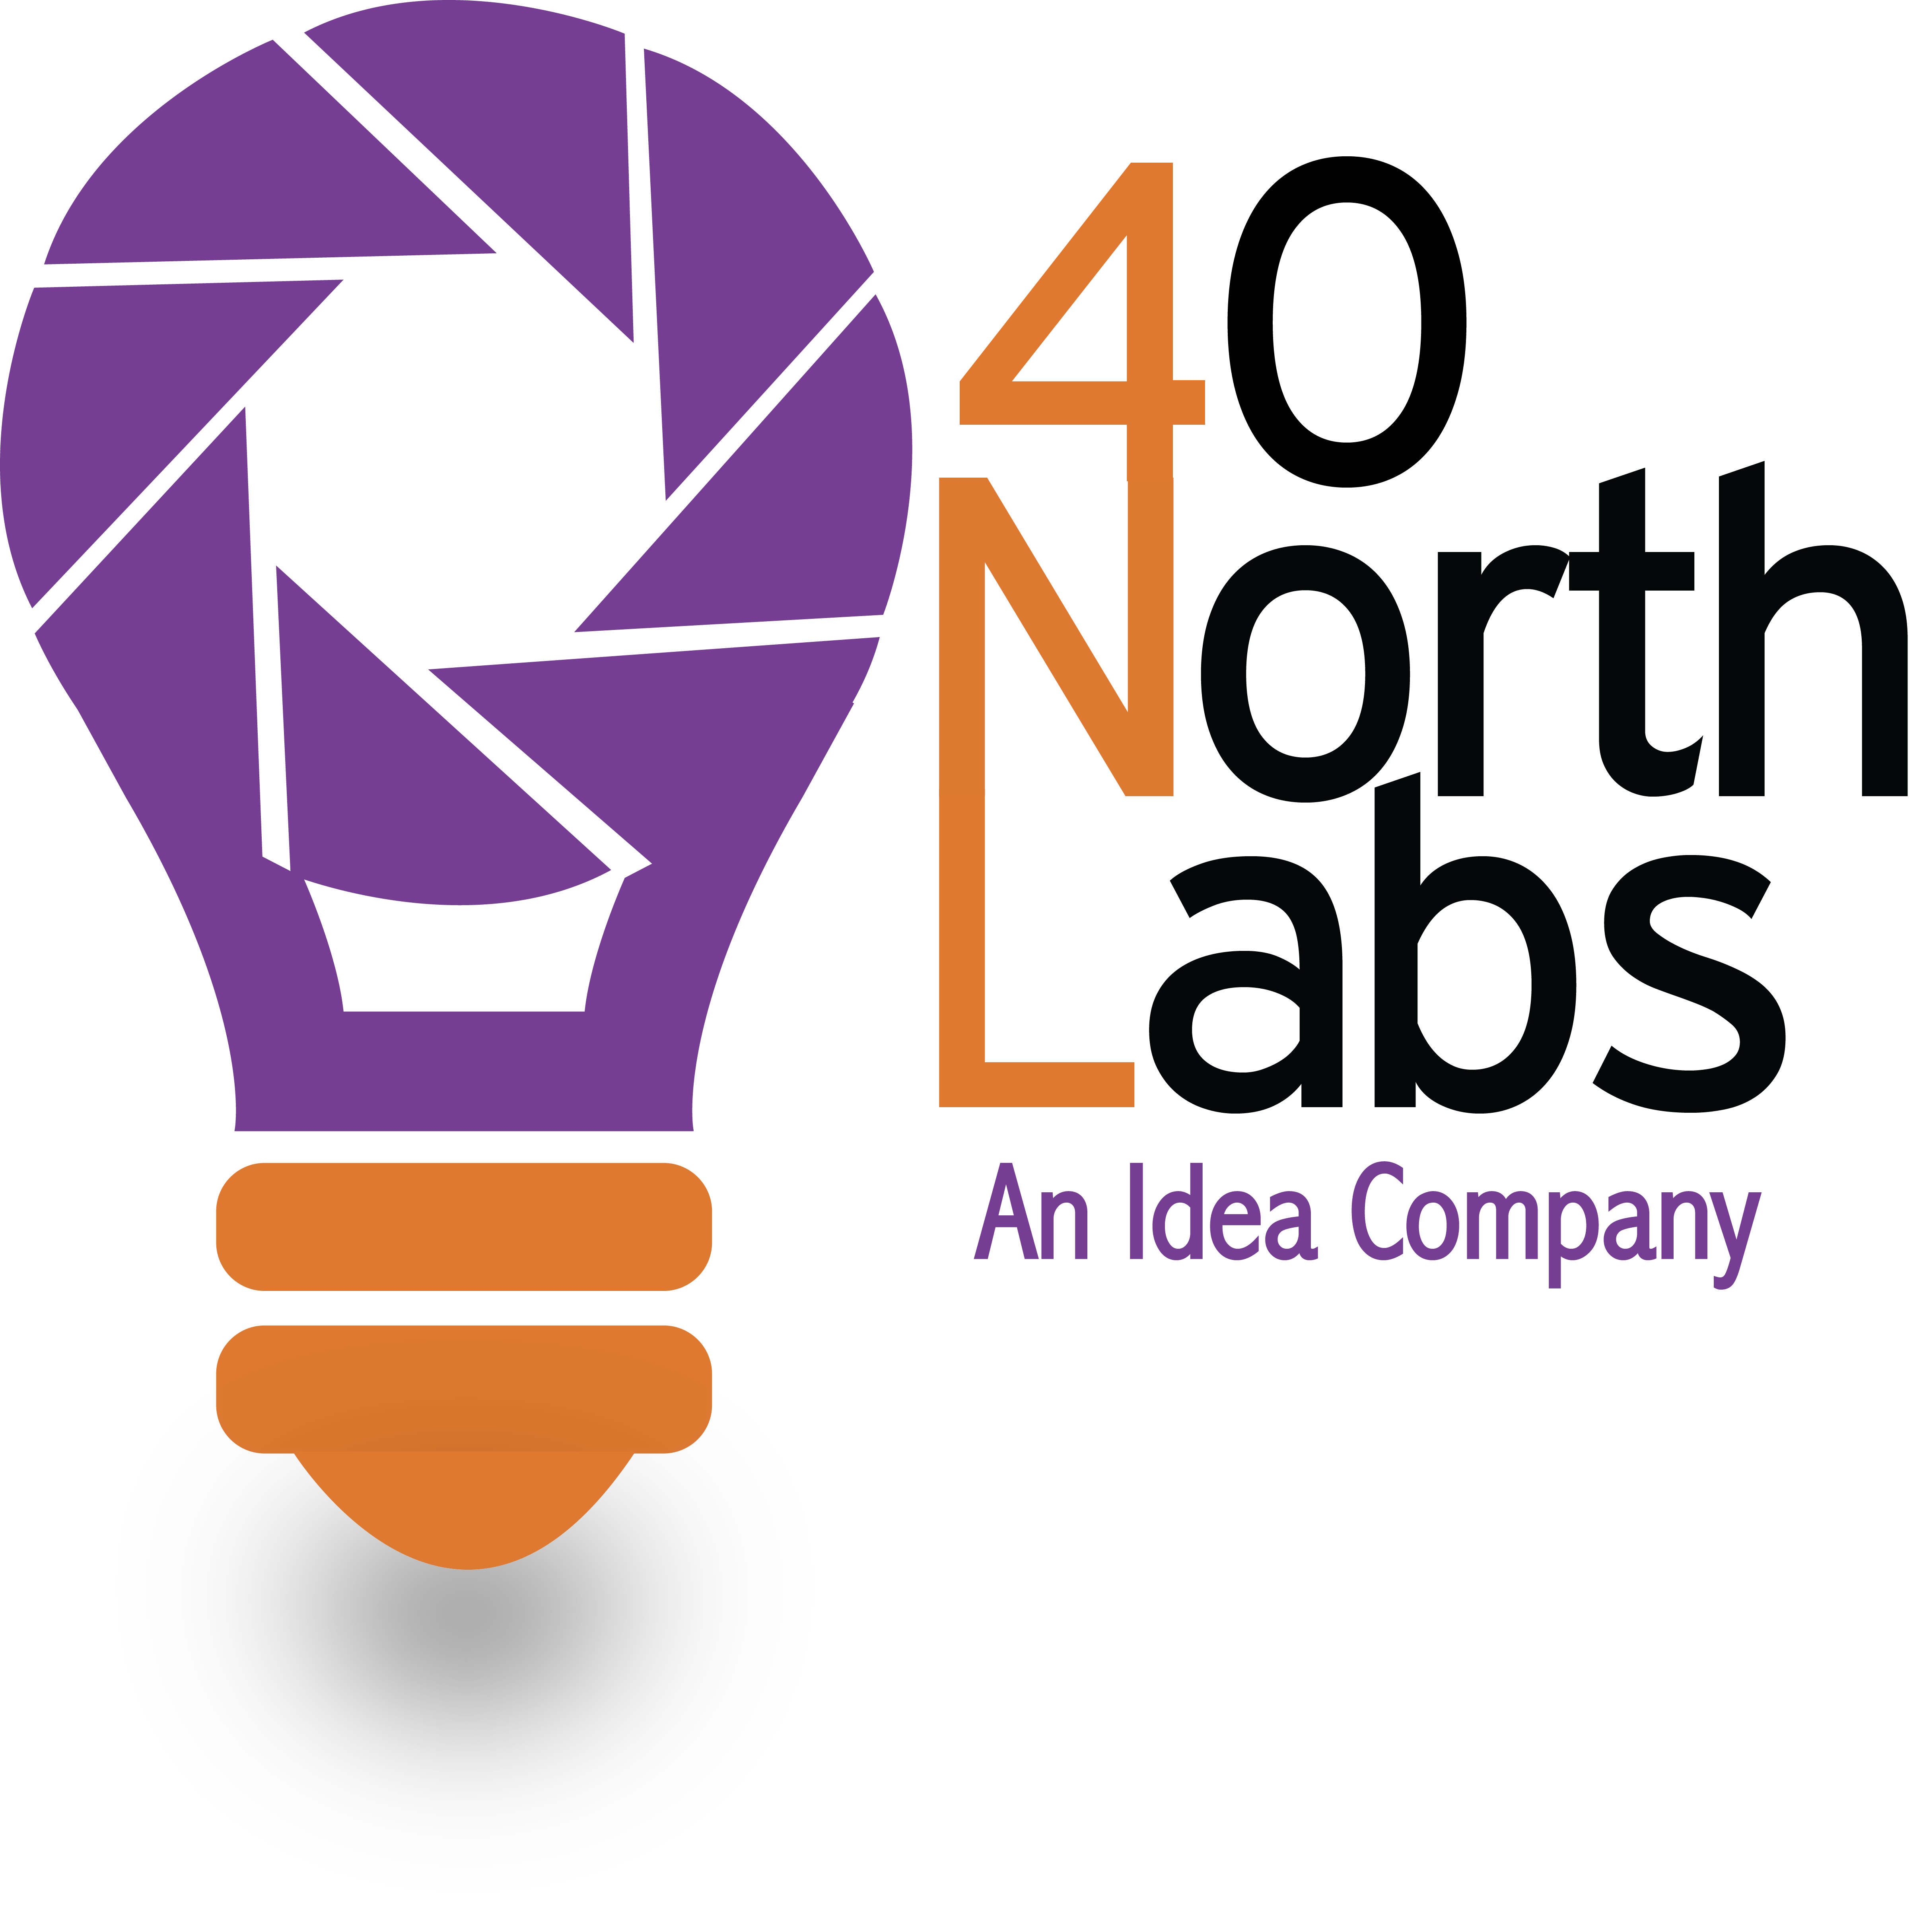 40 North Labs